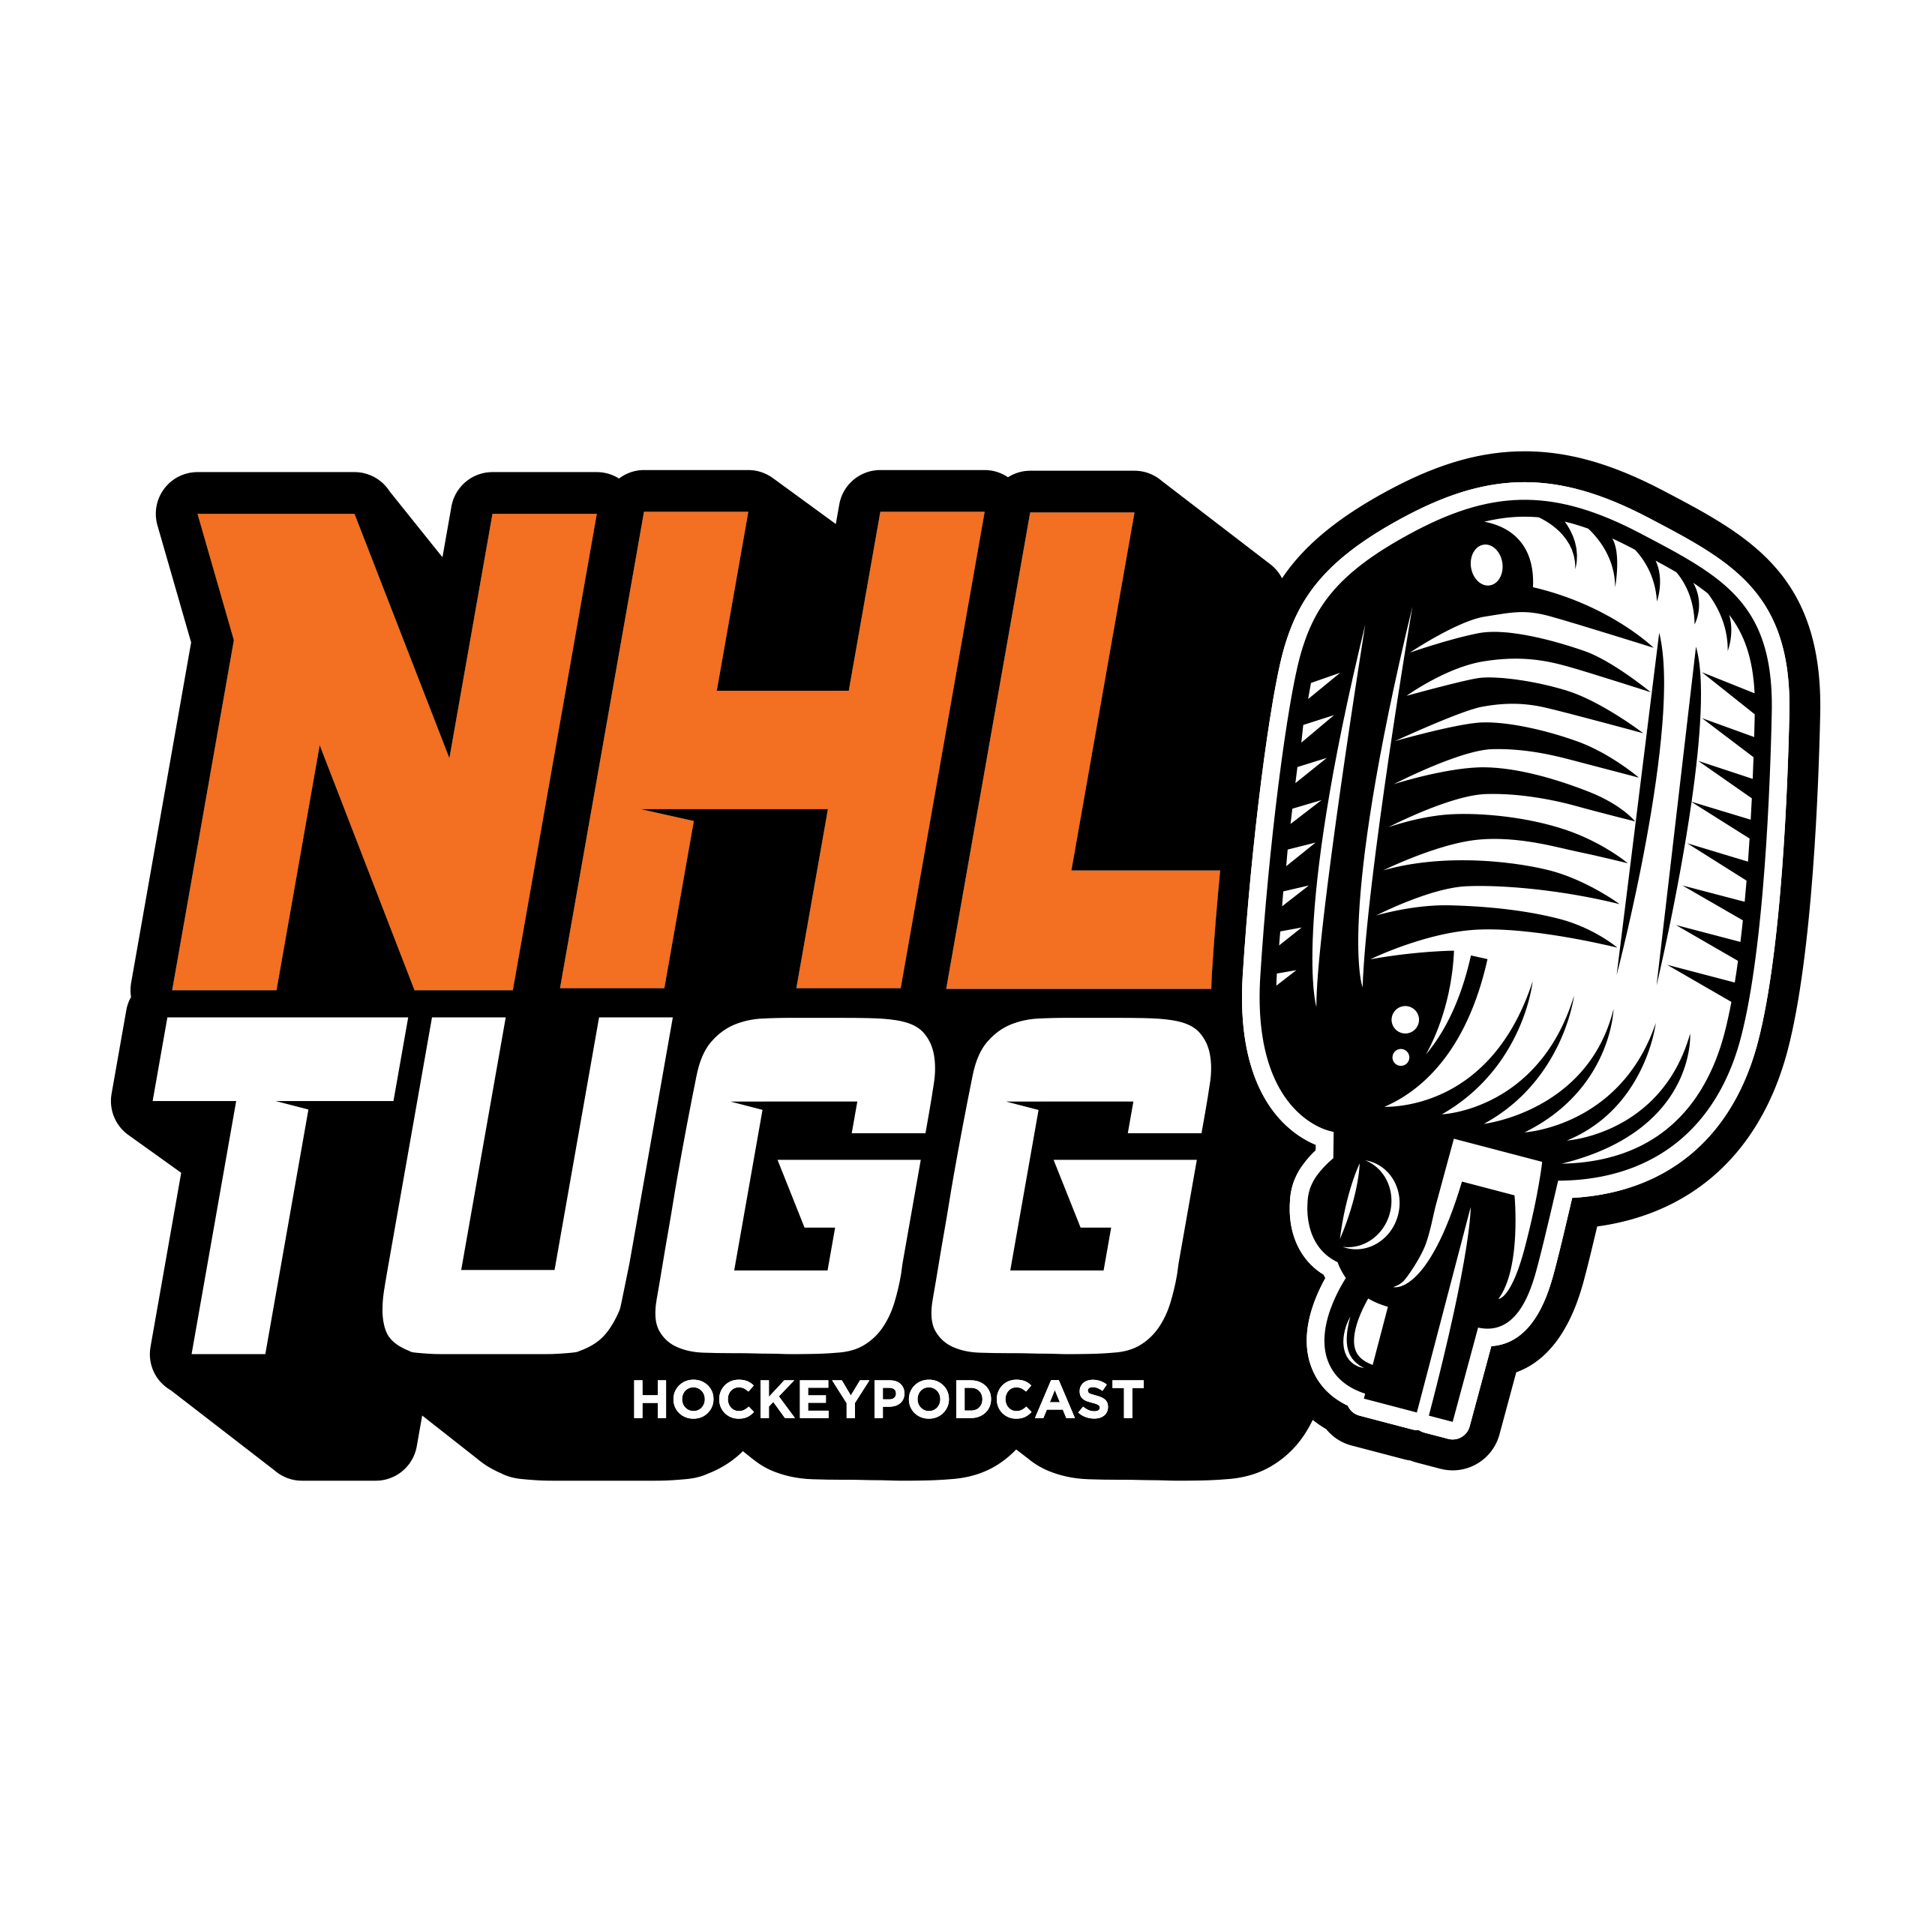 NHL-Tugg avsnitt 112 ”Han skämmer ju ut sig”